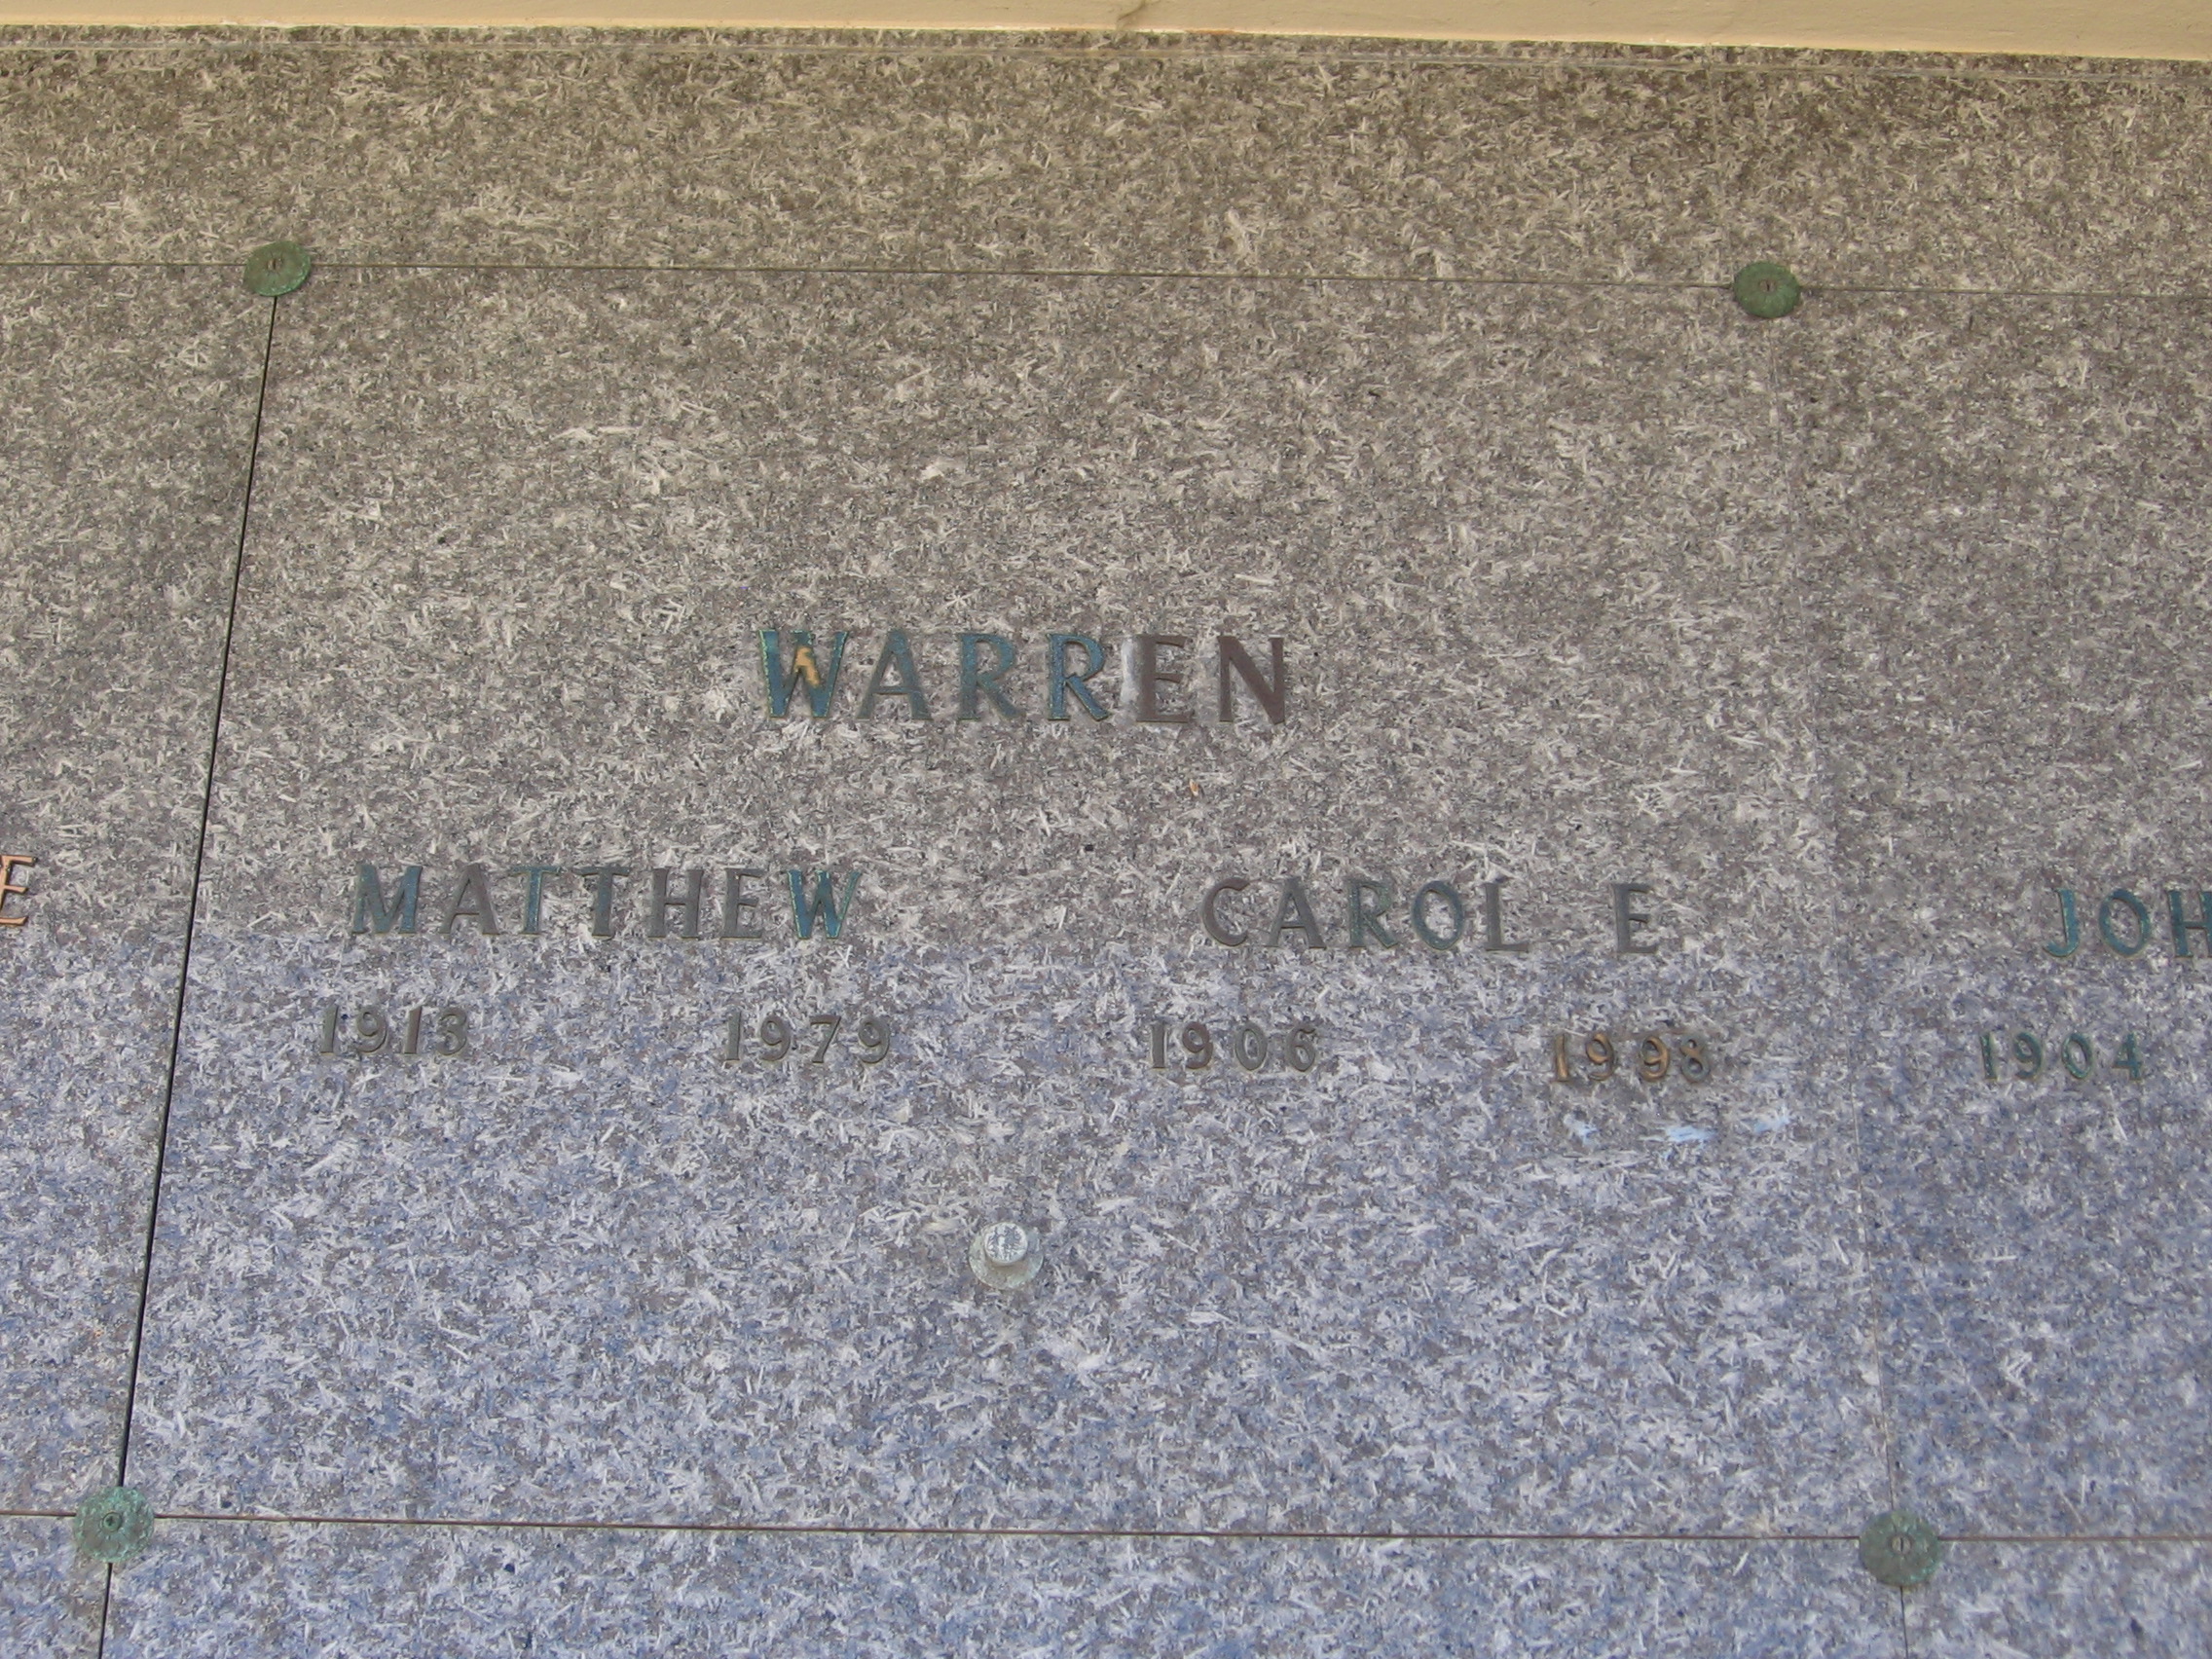 Matthew Warren